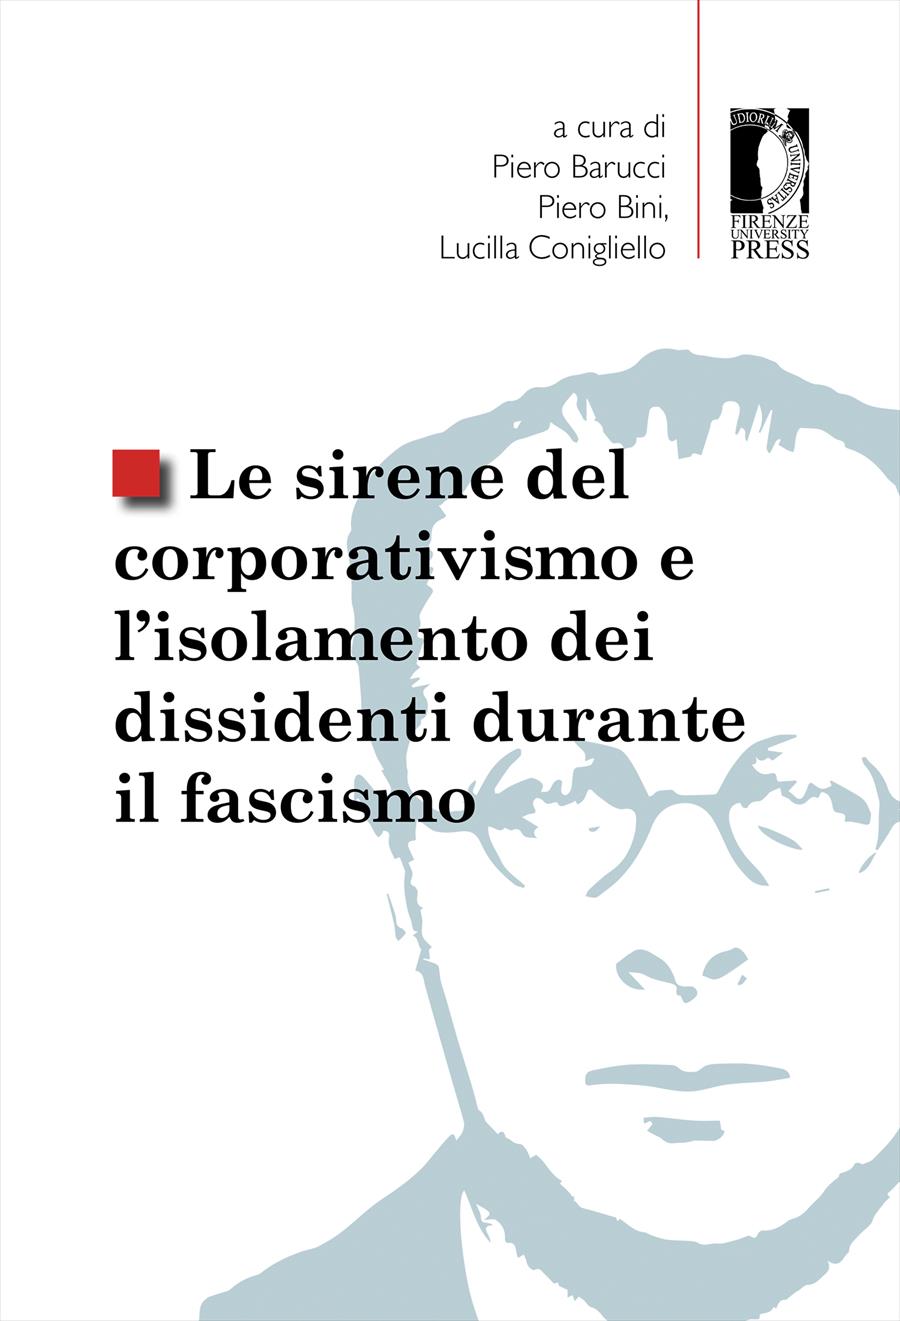 Copertina di Le sirene del corporativismo e l'isolamento dei dissidenti durante il fascismo